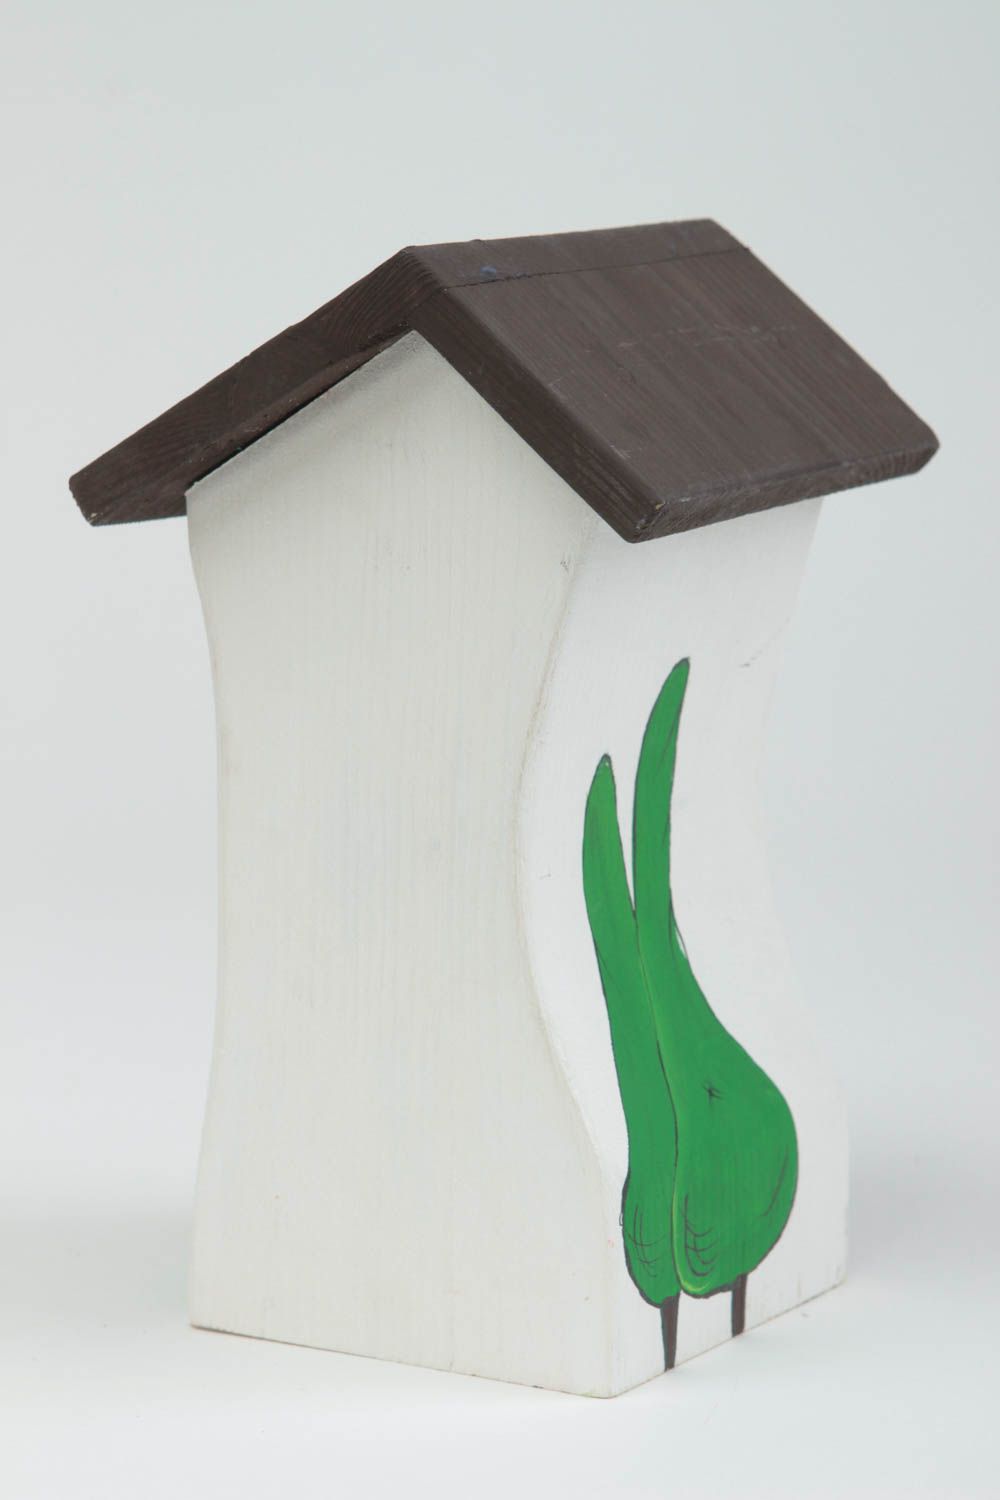 Деревянная статуэтка в виде домика небольшая красивая расписная ручной работы фото 3